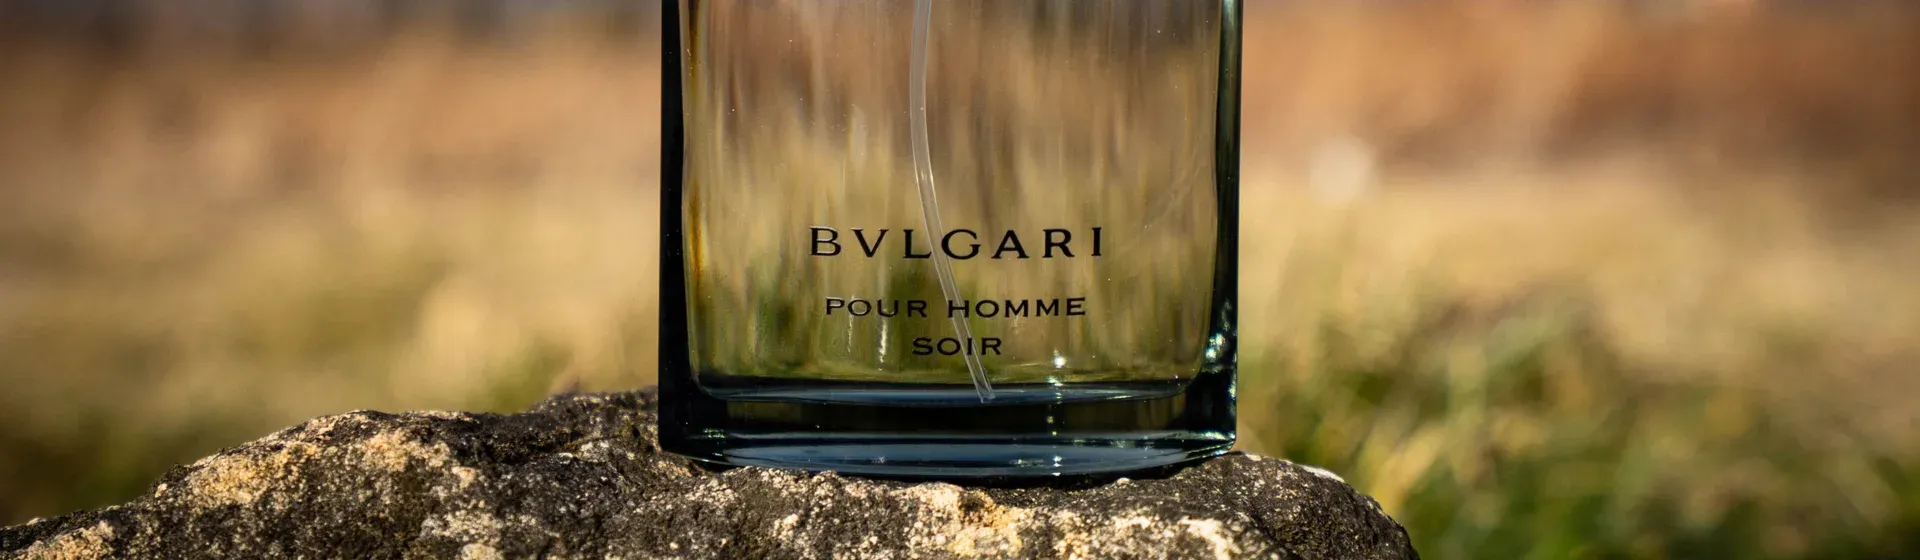 Perfume Bvlgari: conheça as melhores opções da marca italiana